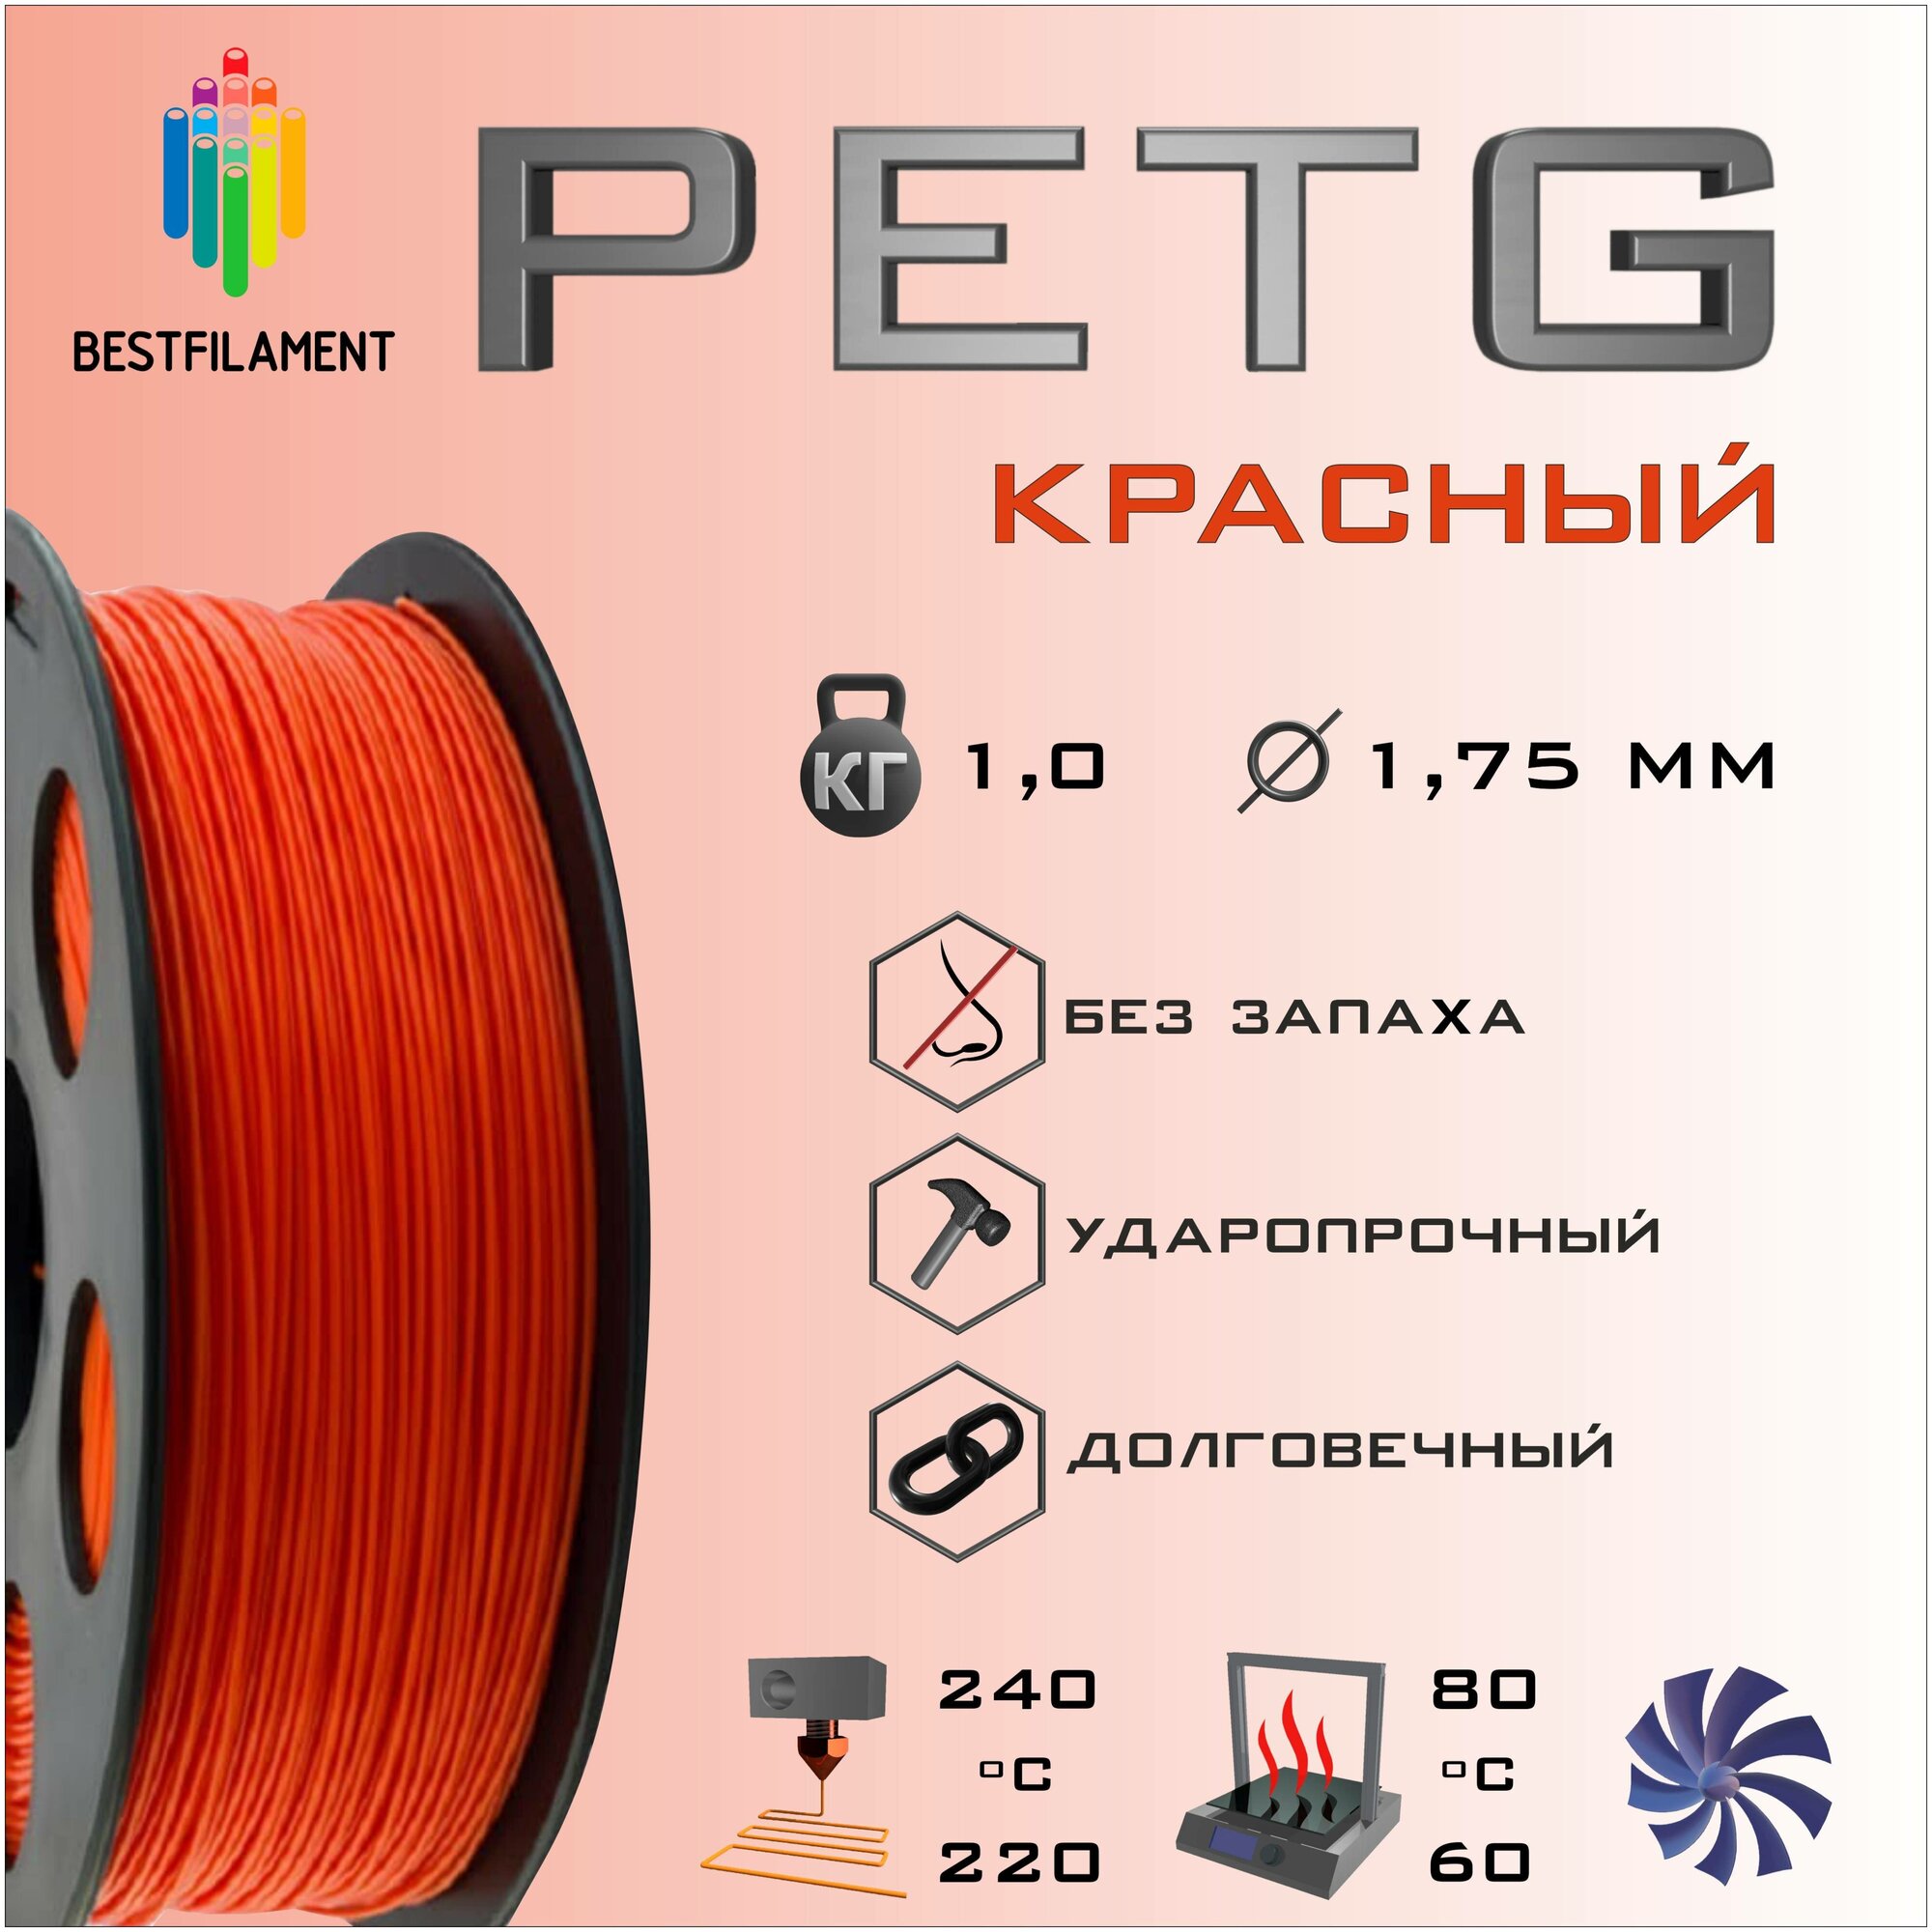 PETG Красный 1000 гр. 1.75 мм пластик Bestfilament для 3D-принтера